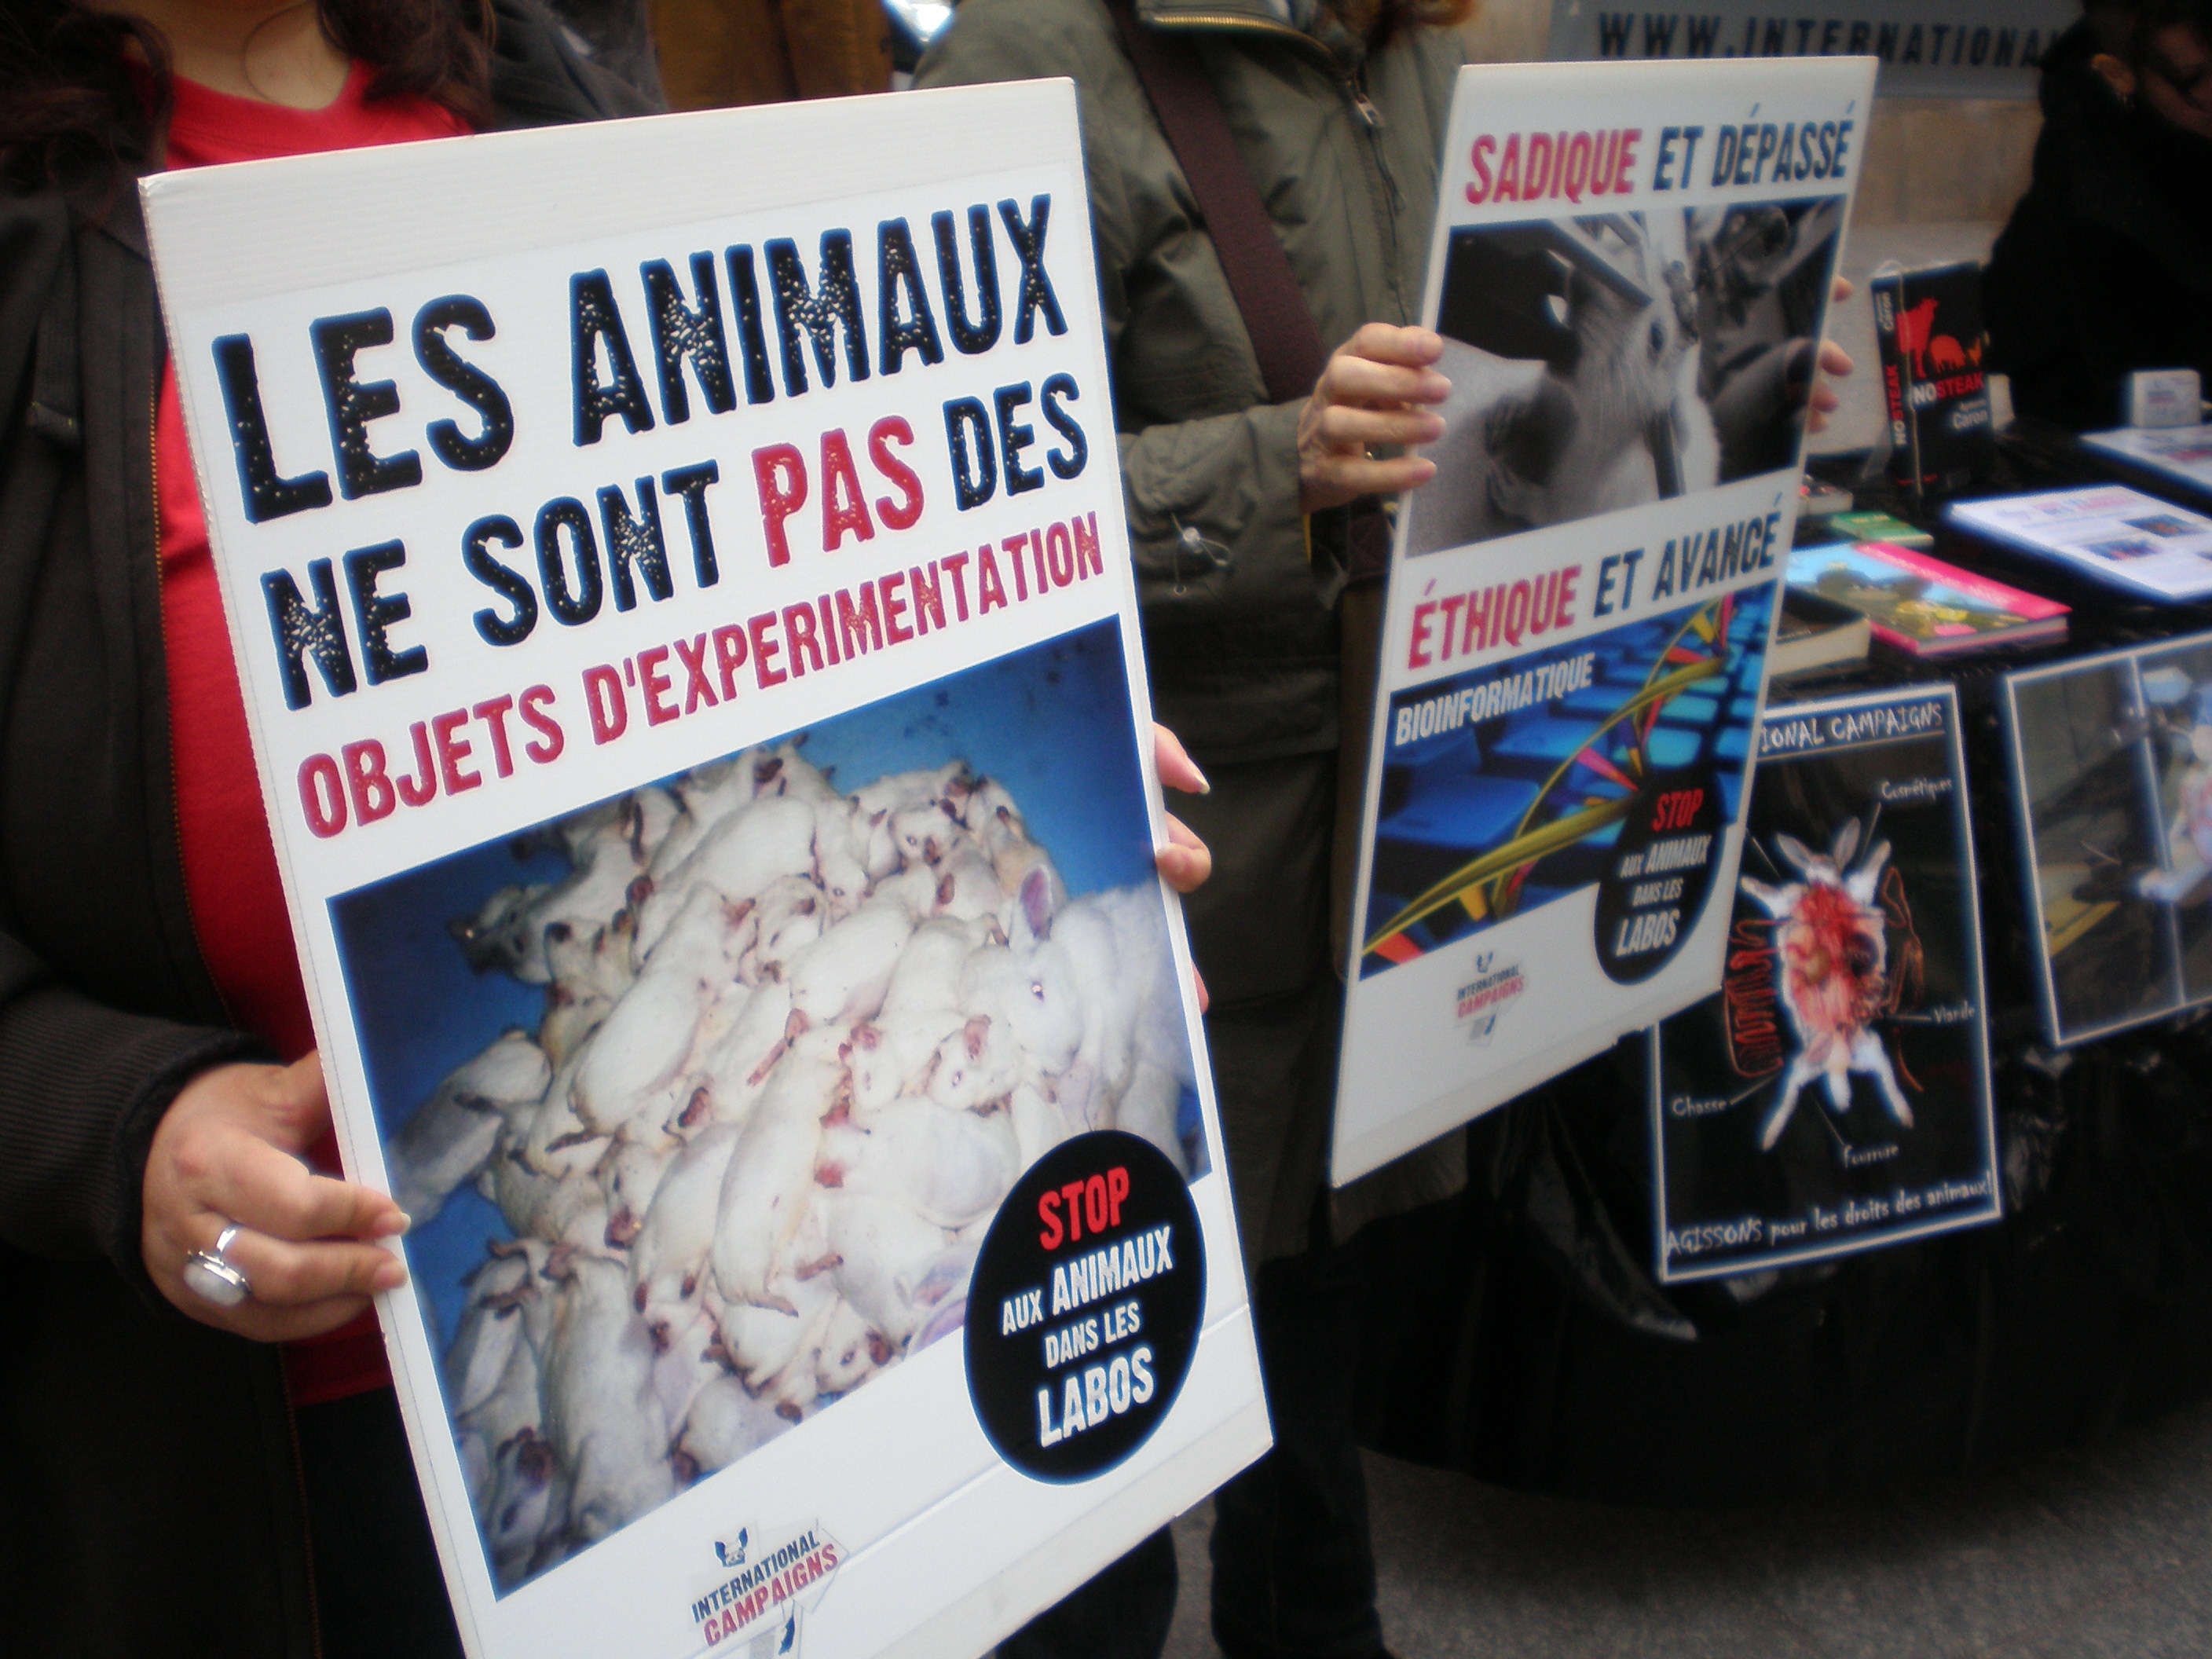 Paris – 18 mai 2013 – Stand Stop aux Animaux dans les Labos et pour les droits des animaux